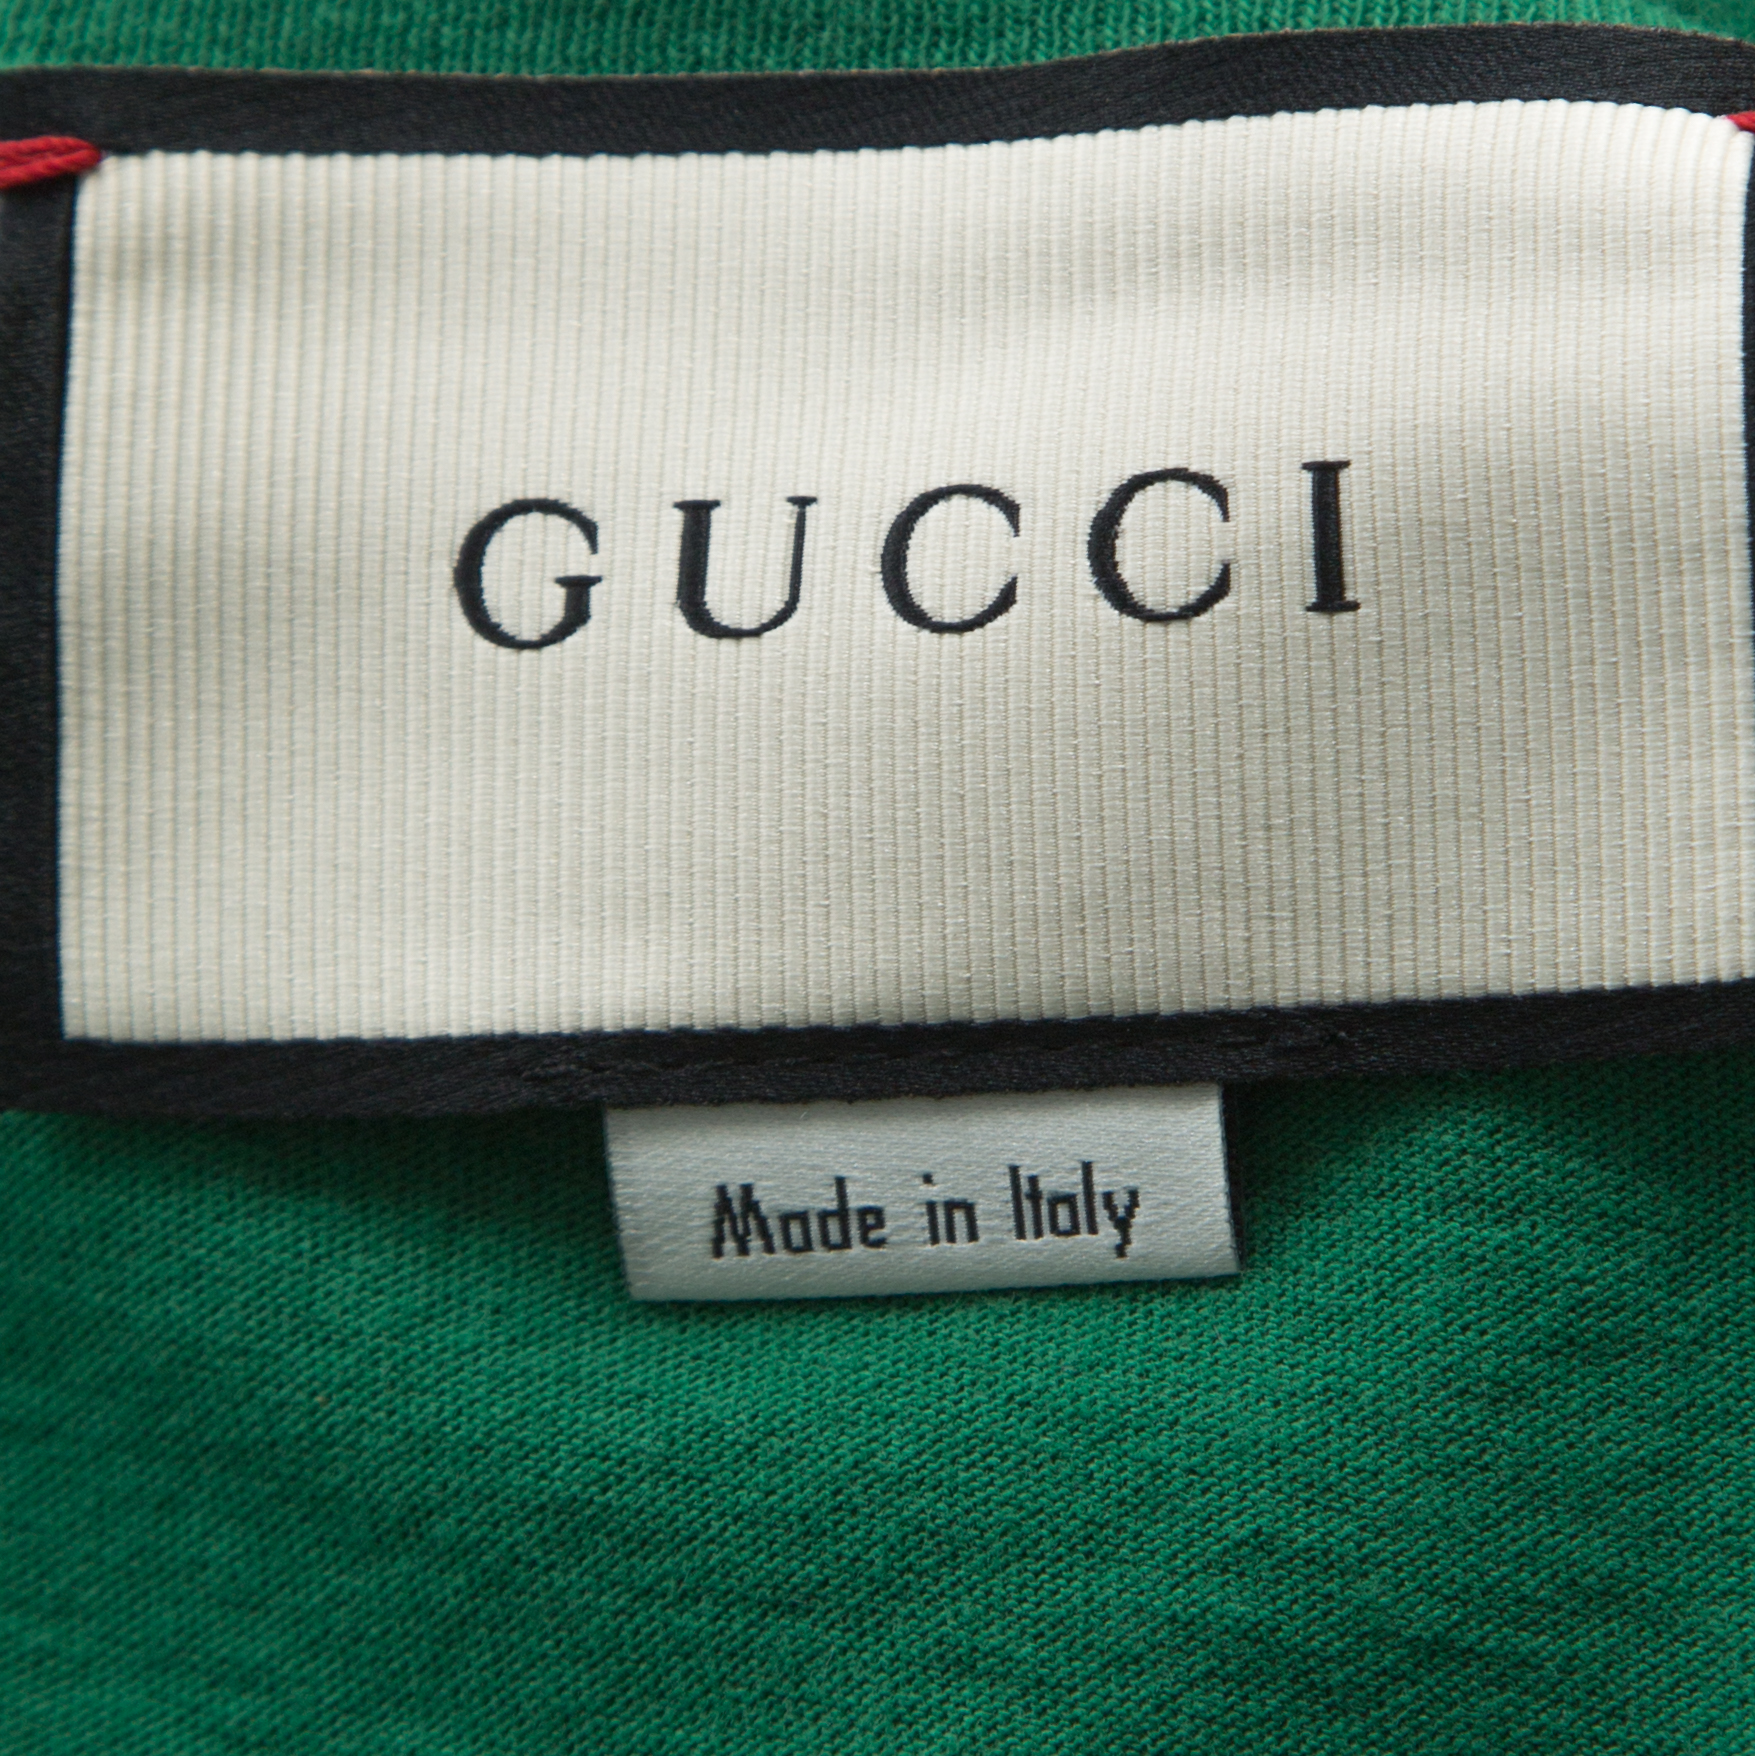 Gucci Baby Logo Flash Sales, 59% OFF | www.gruposincom.es